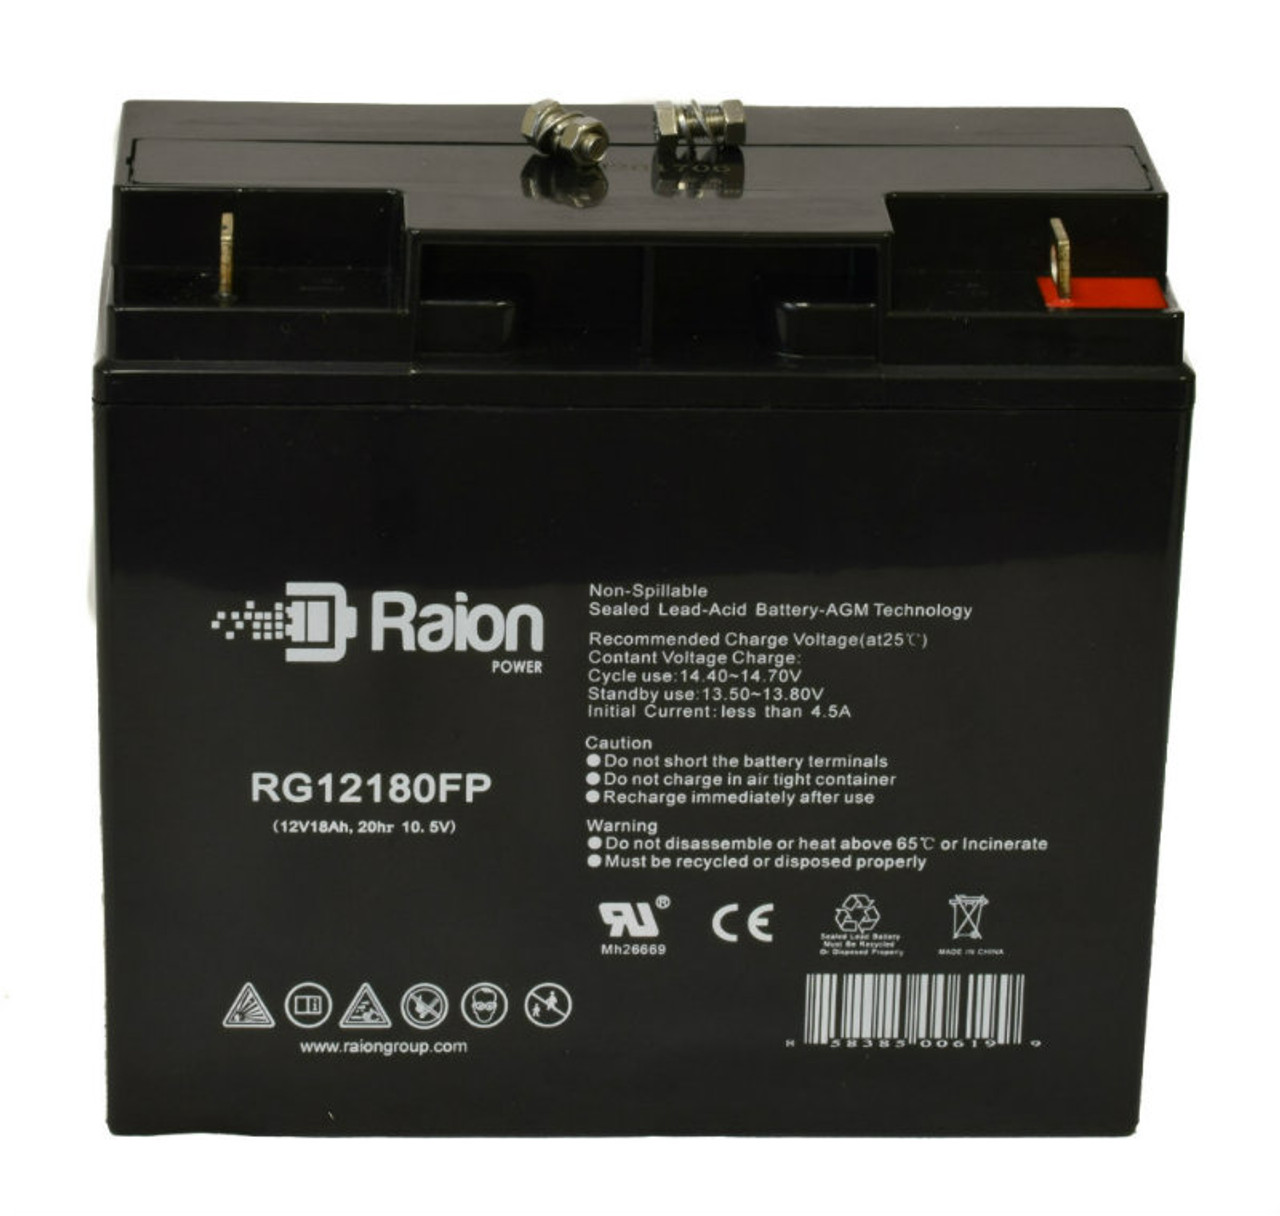 Raion Power RG12180FP 12V 18Ah Lead Acid Battery for CSB GP12180